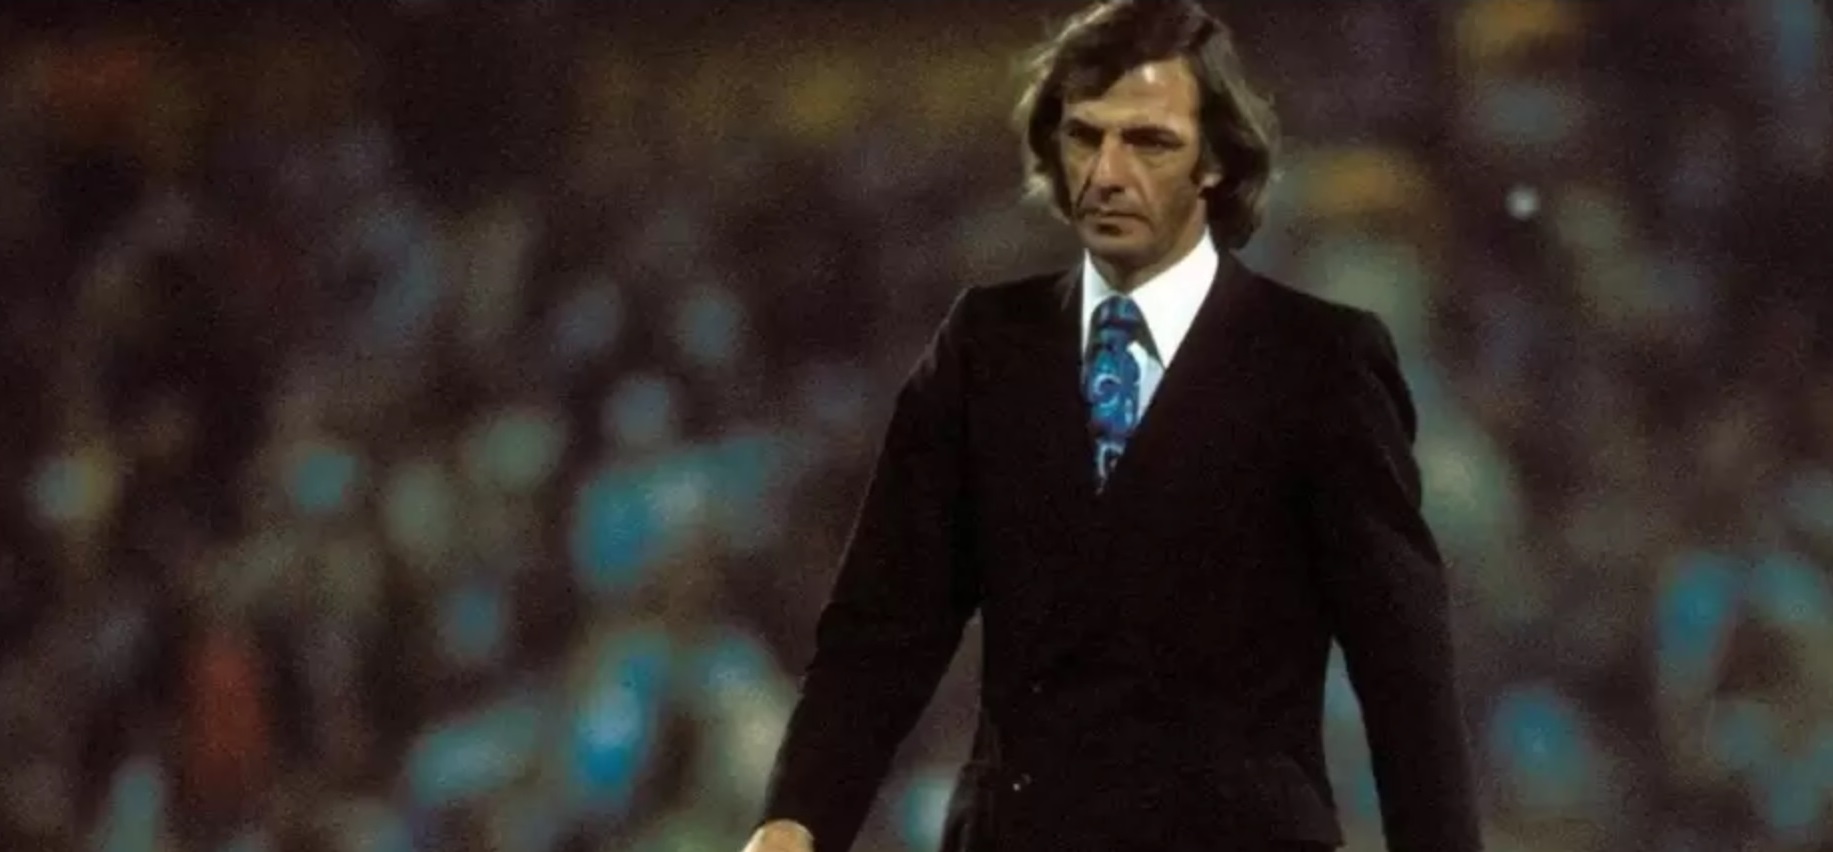 A los 85 años, murió César Luis Menotti, ex Técnico de la Selección Argentina